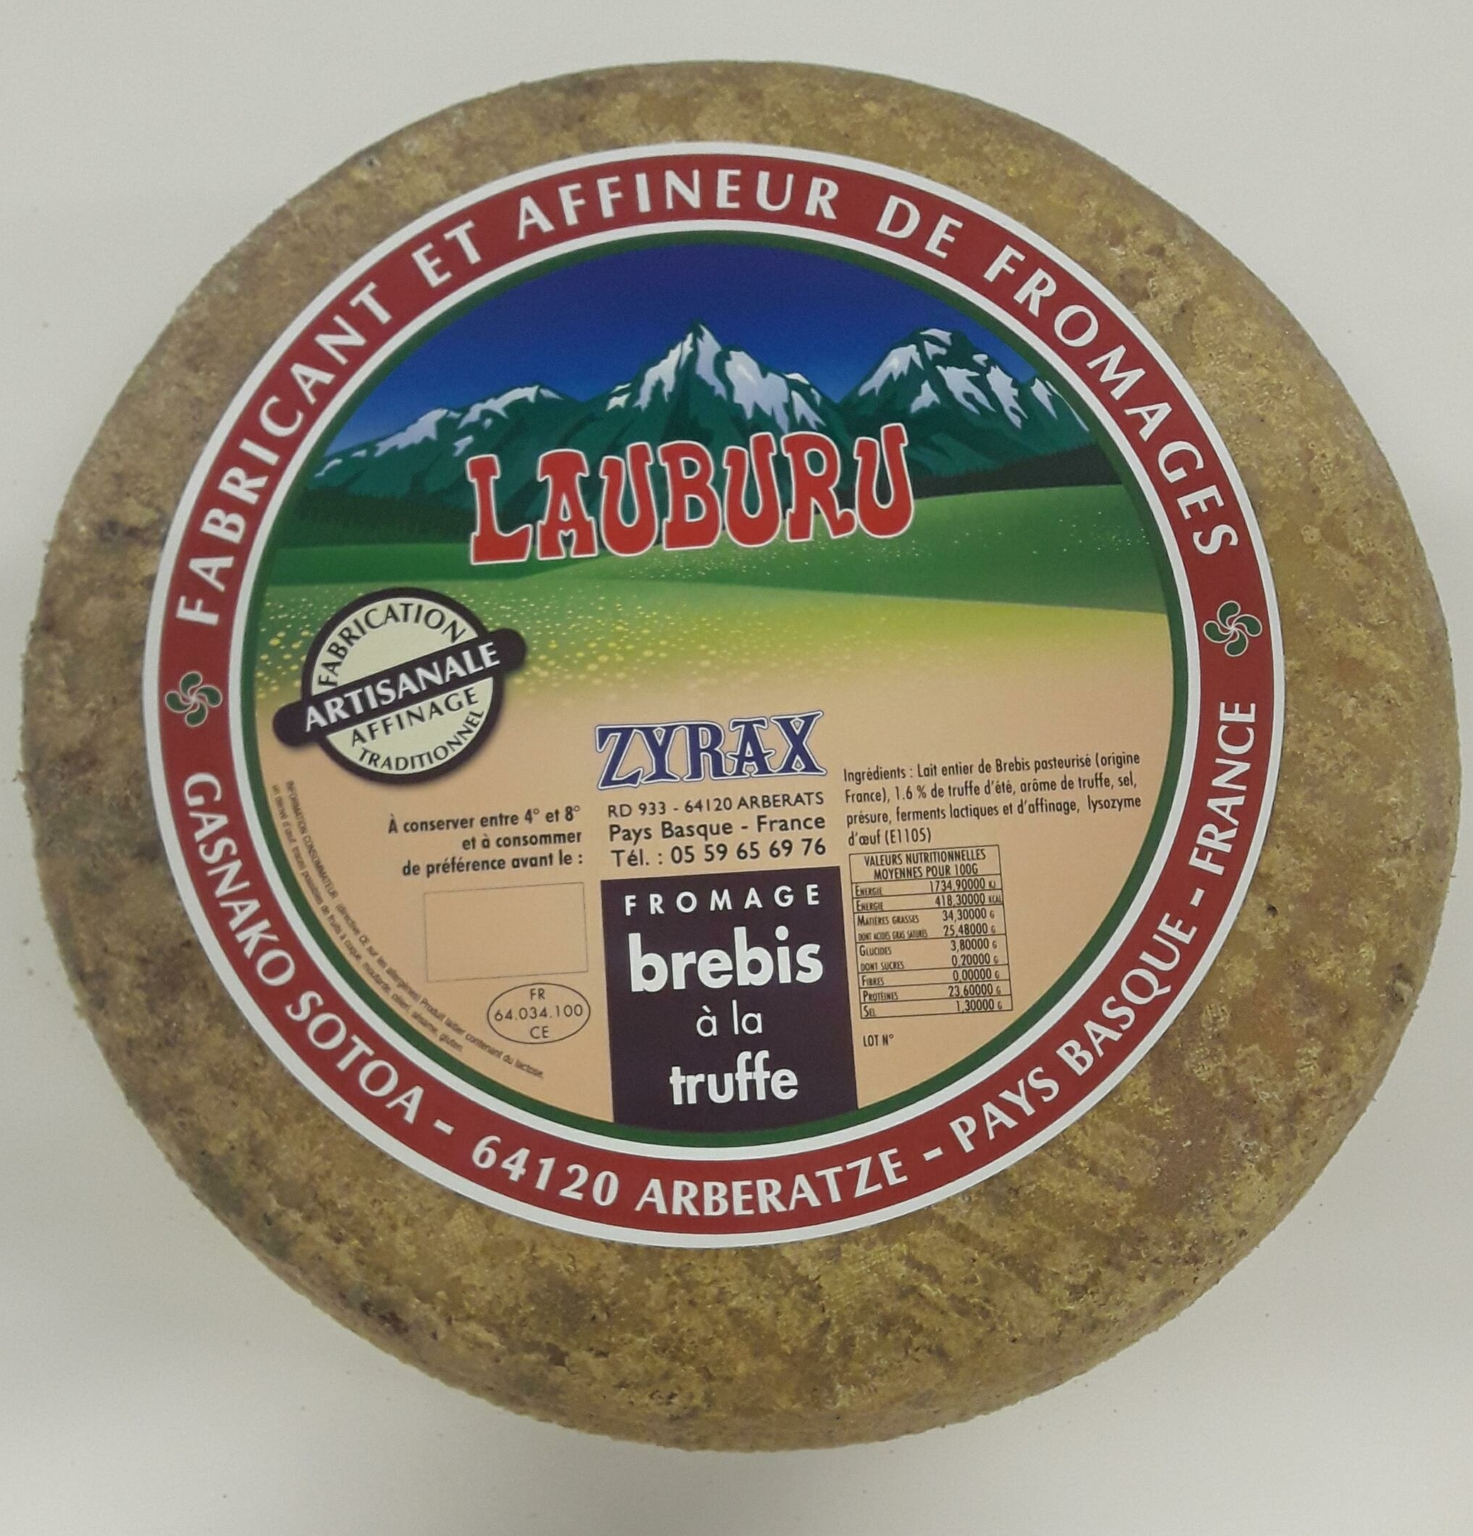 Tomme de Brebis à la truffe Lauburu Zyrax fromage artisanale www.luxfood-shop.fr